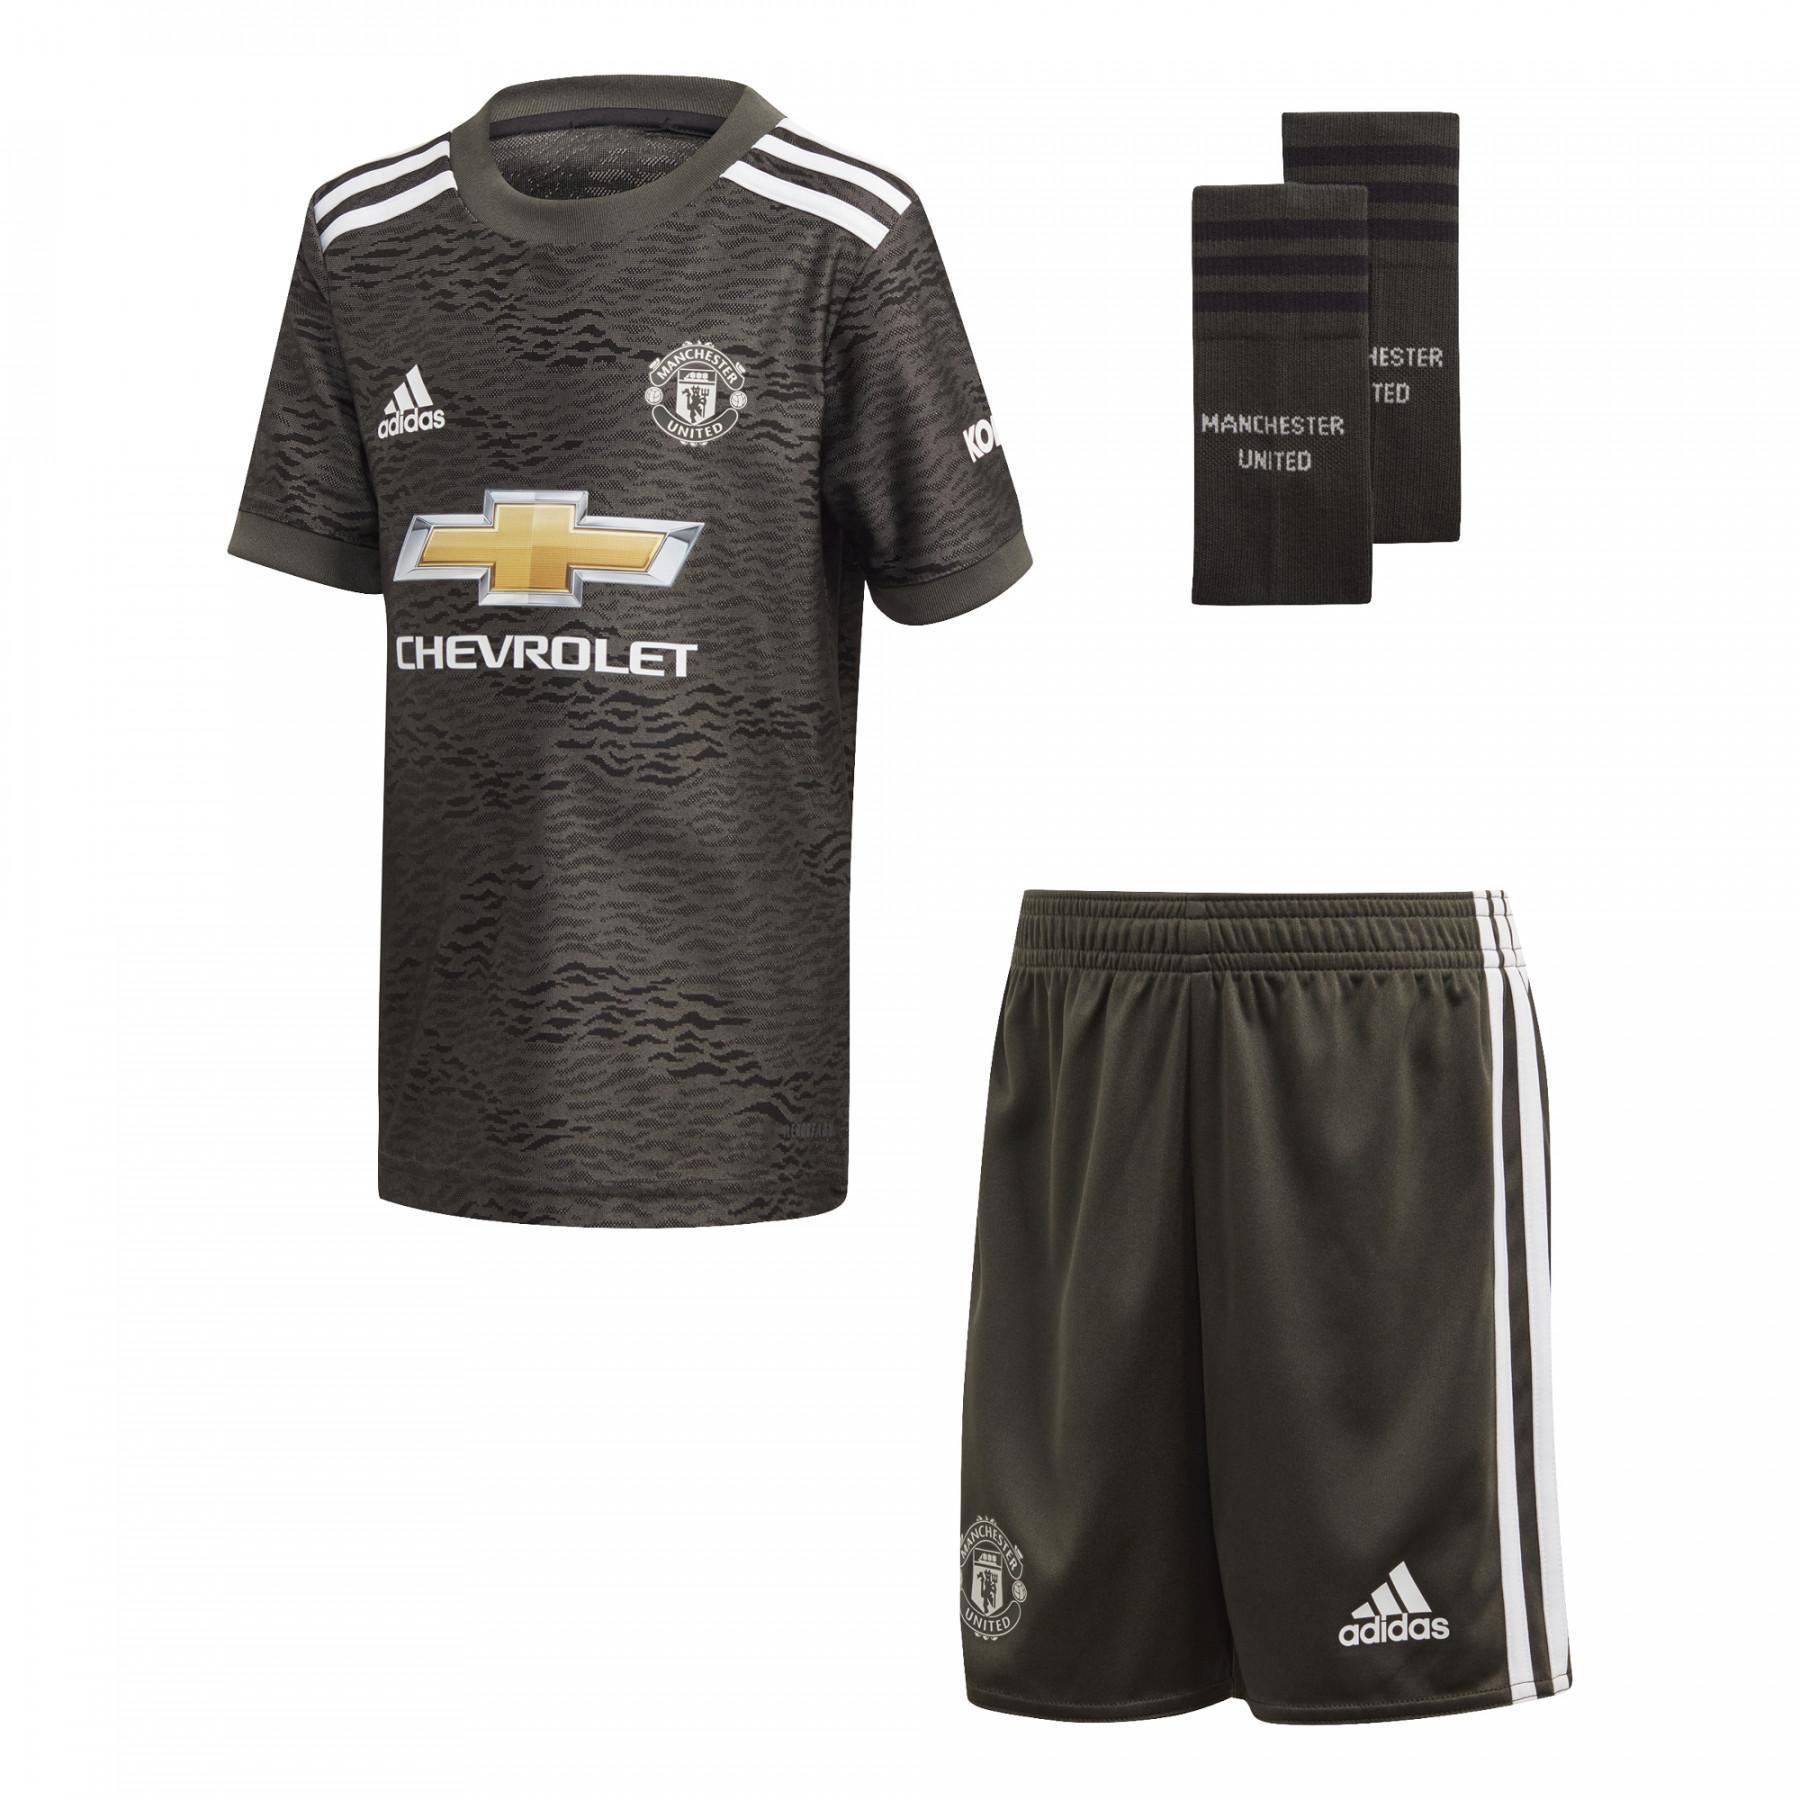 Mini kit criança exterior Manchester United 2020/21